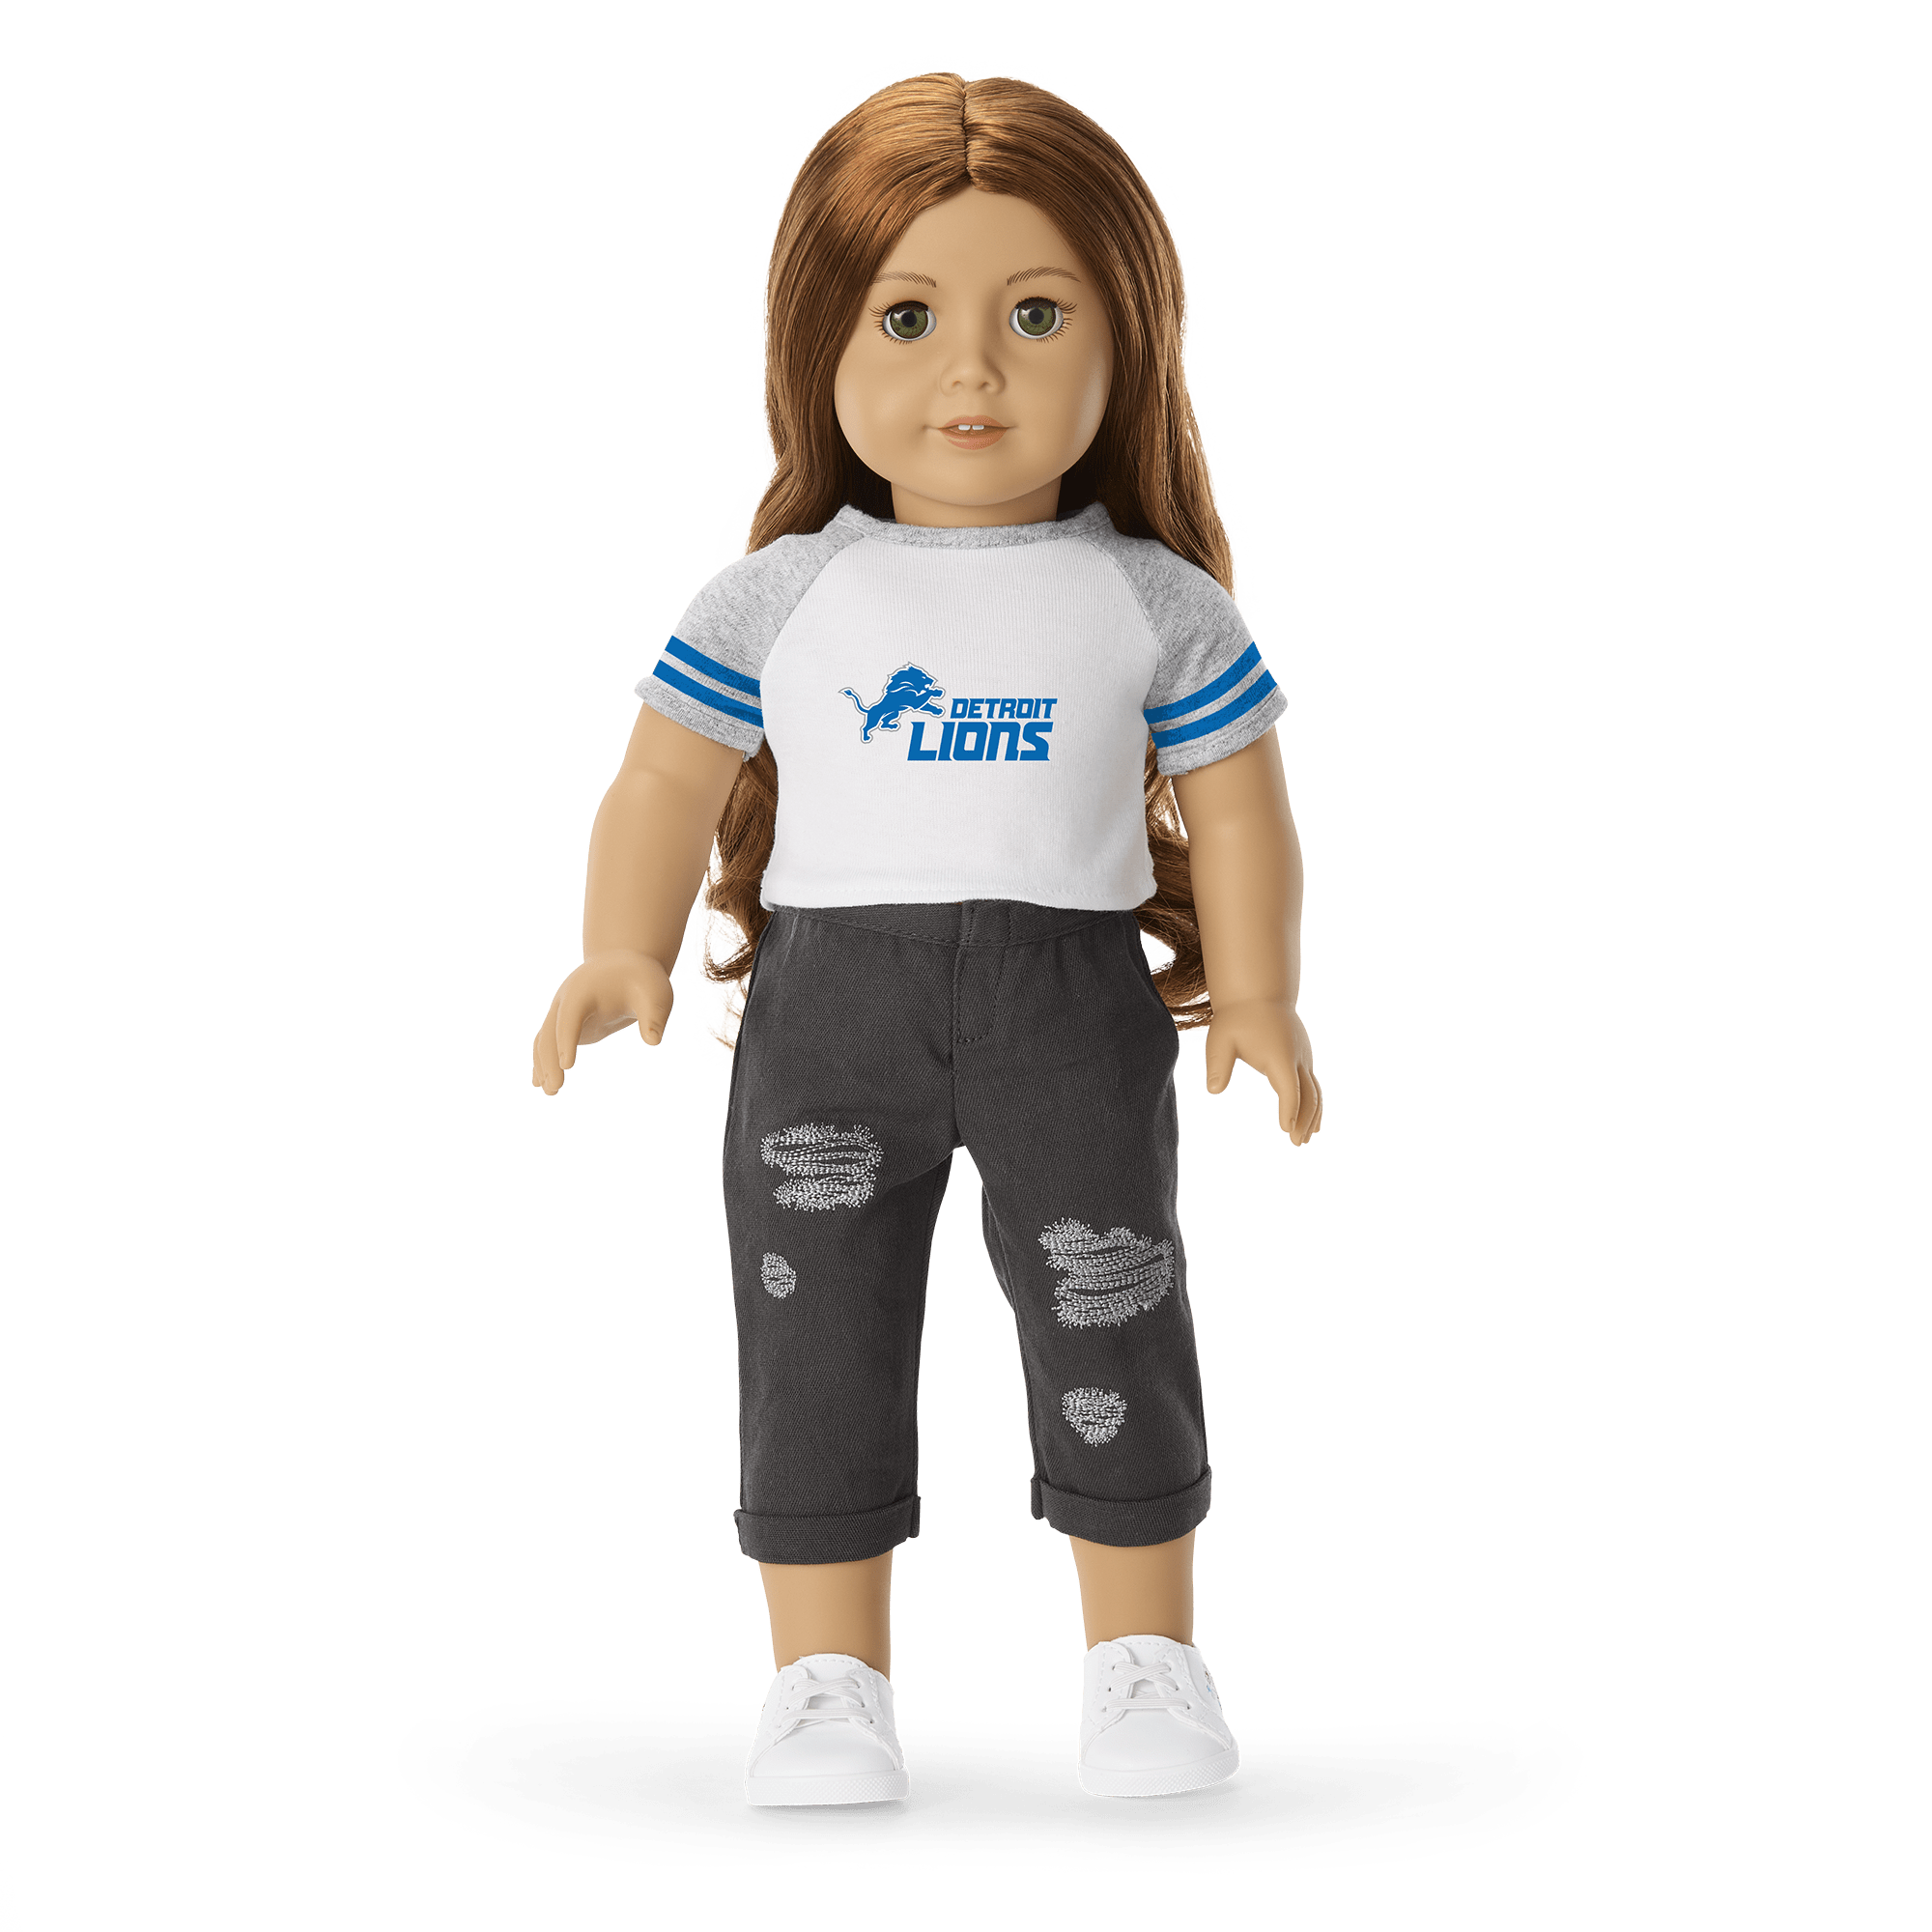 American Girl® x NFL Detroit Lions Fan Tee for 18-inch Dolls